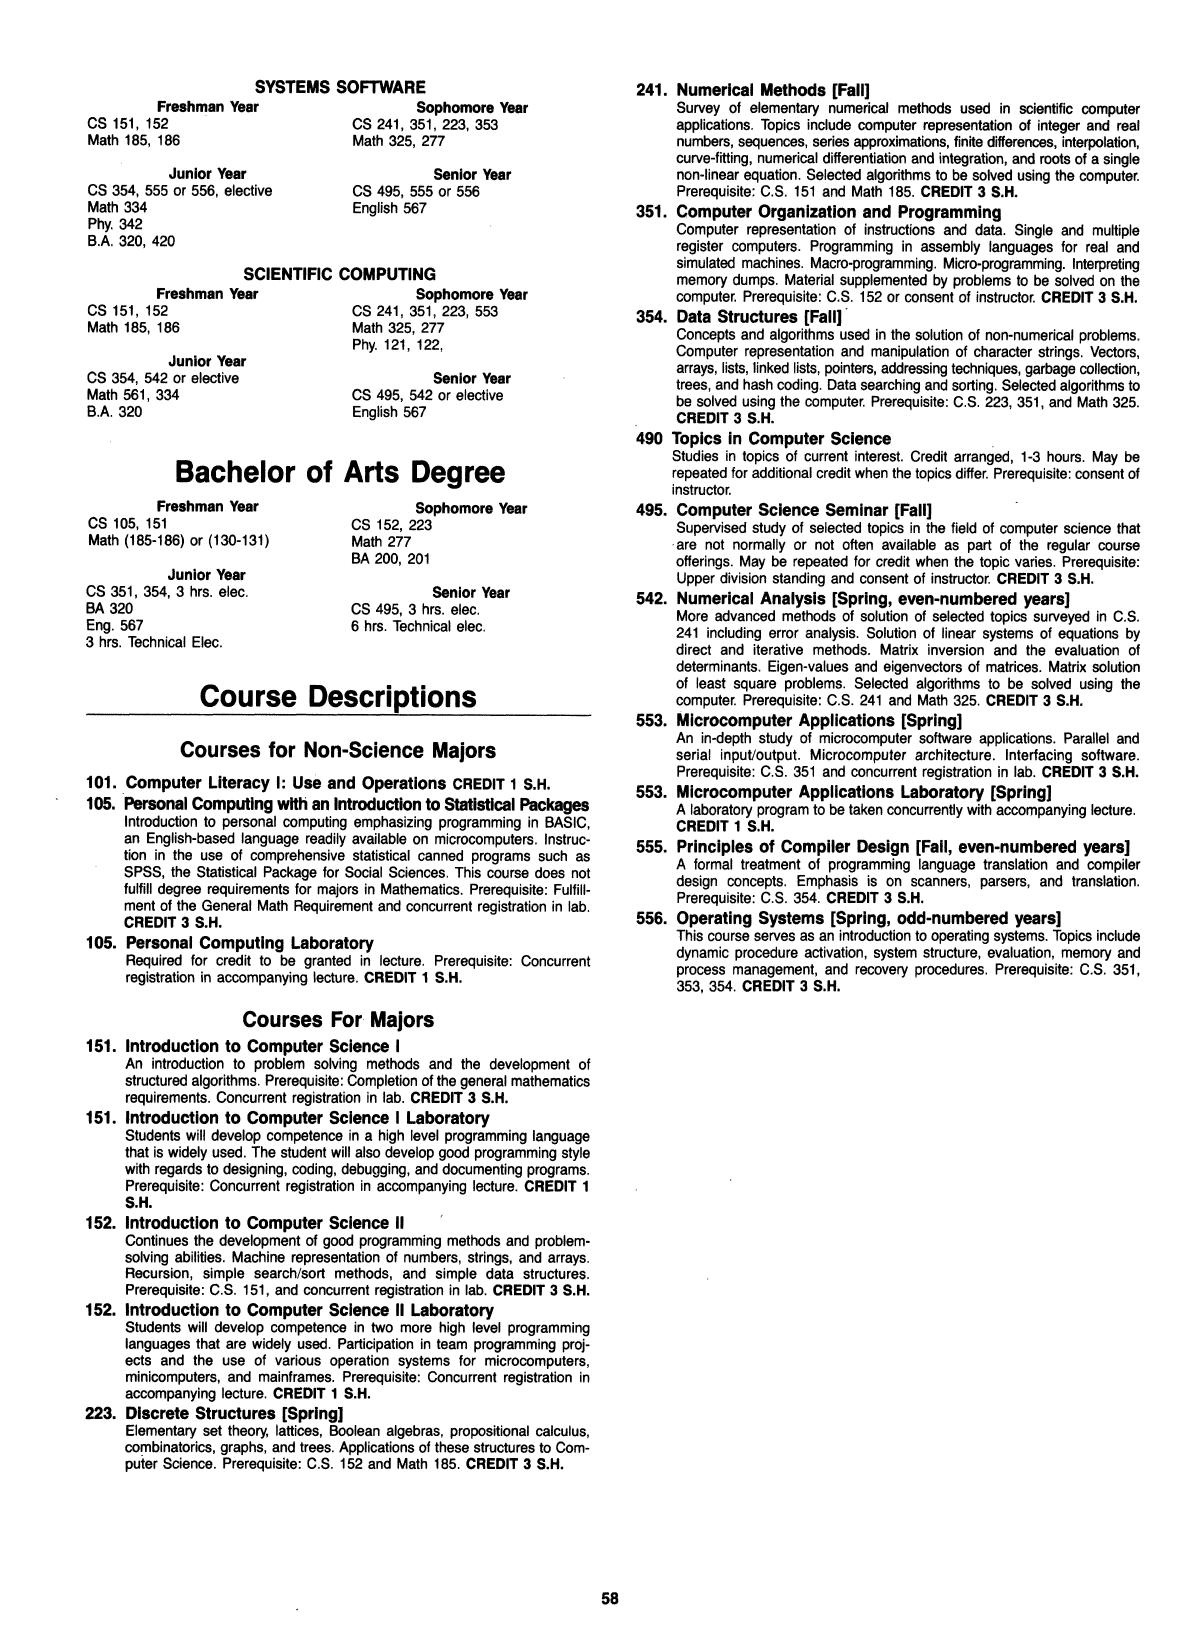 Catalog of Abilene Christian University, 1984-1985
                                                
                                                    58
                                                